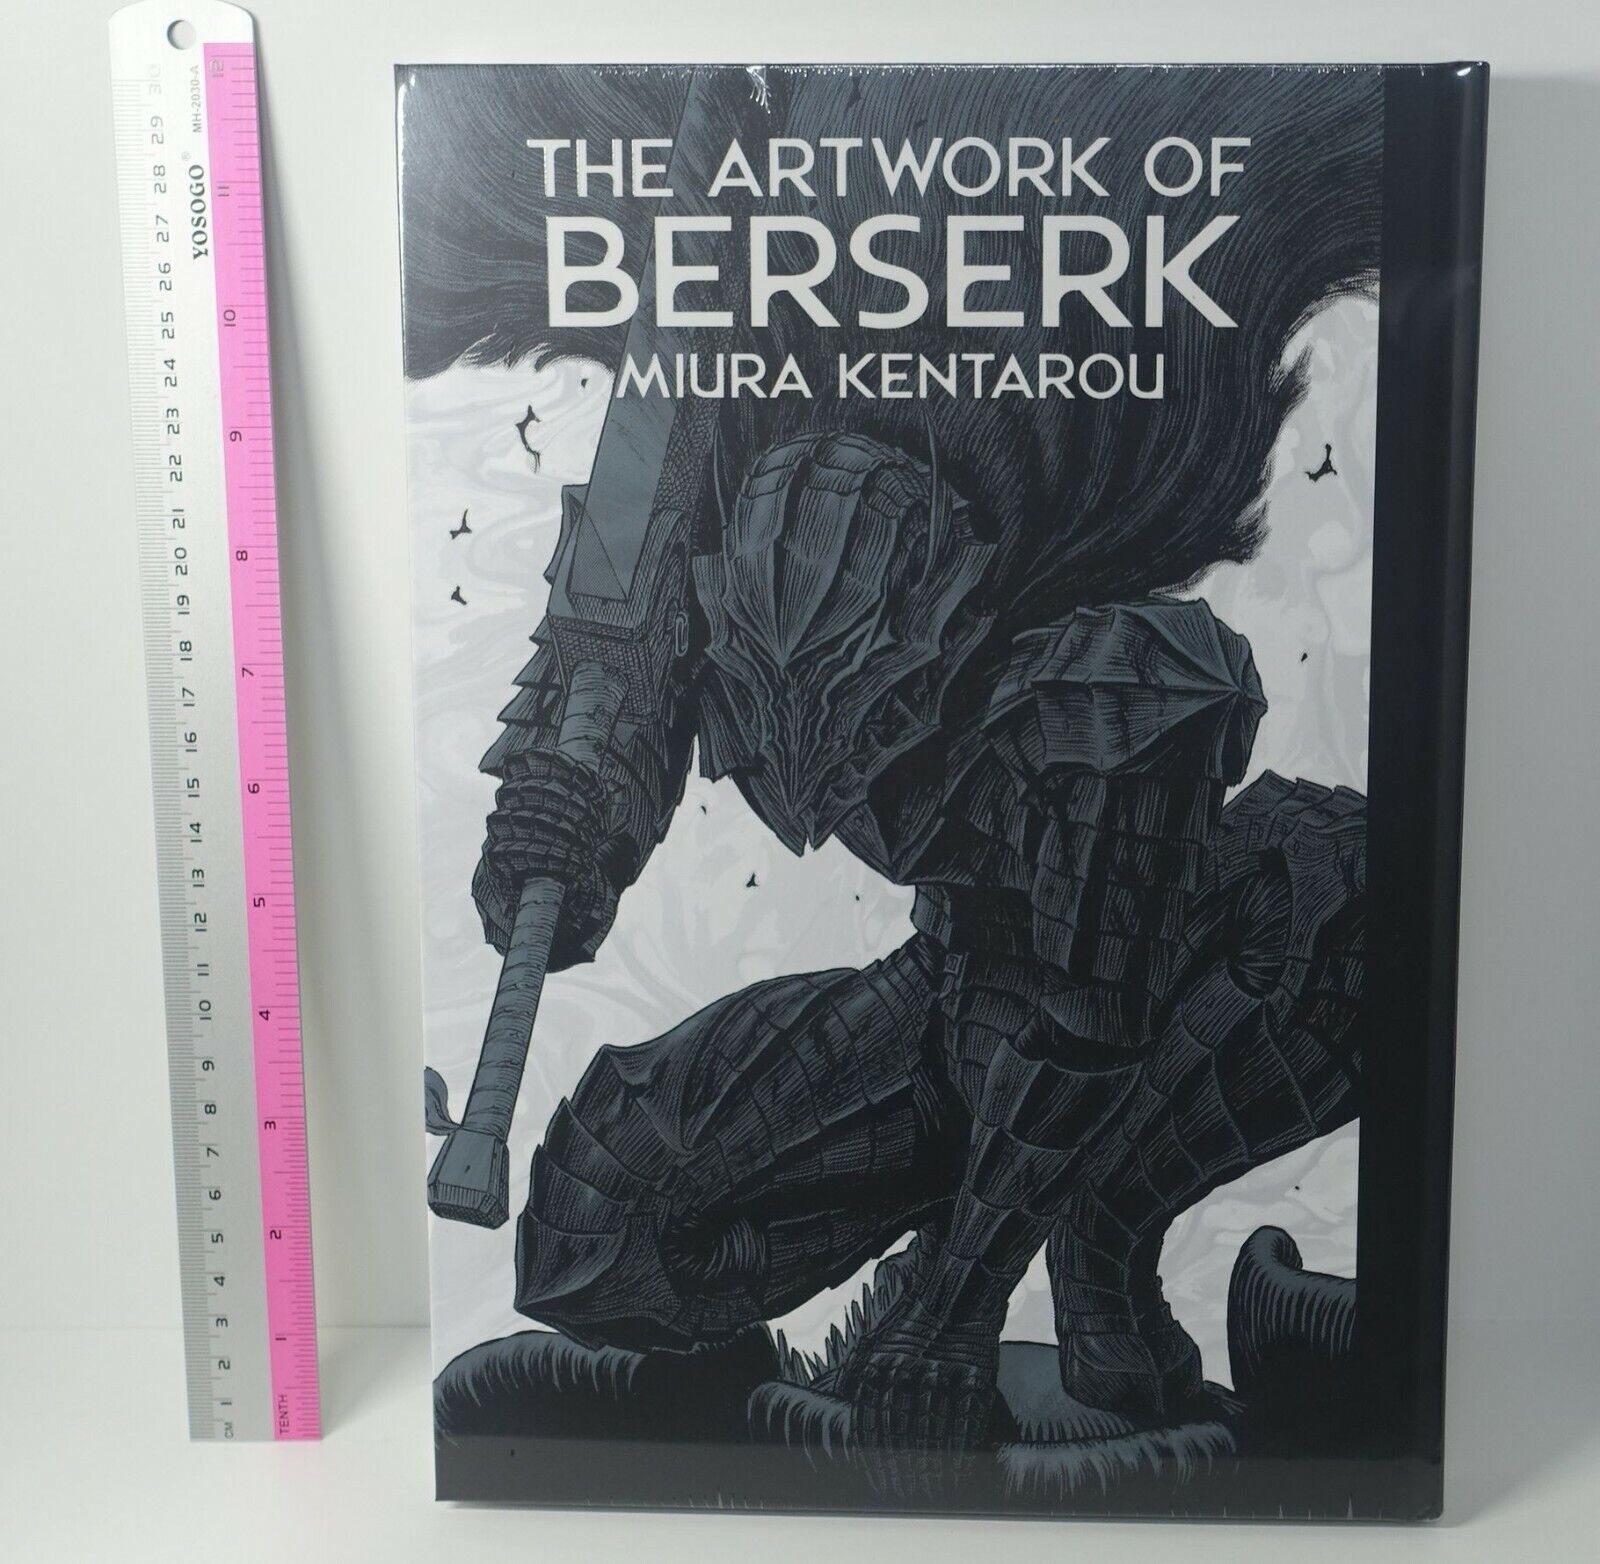 MIURA KENTAROU BERSERK EXHIBITION EVENT THE ART WORK OF BERSERK